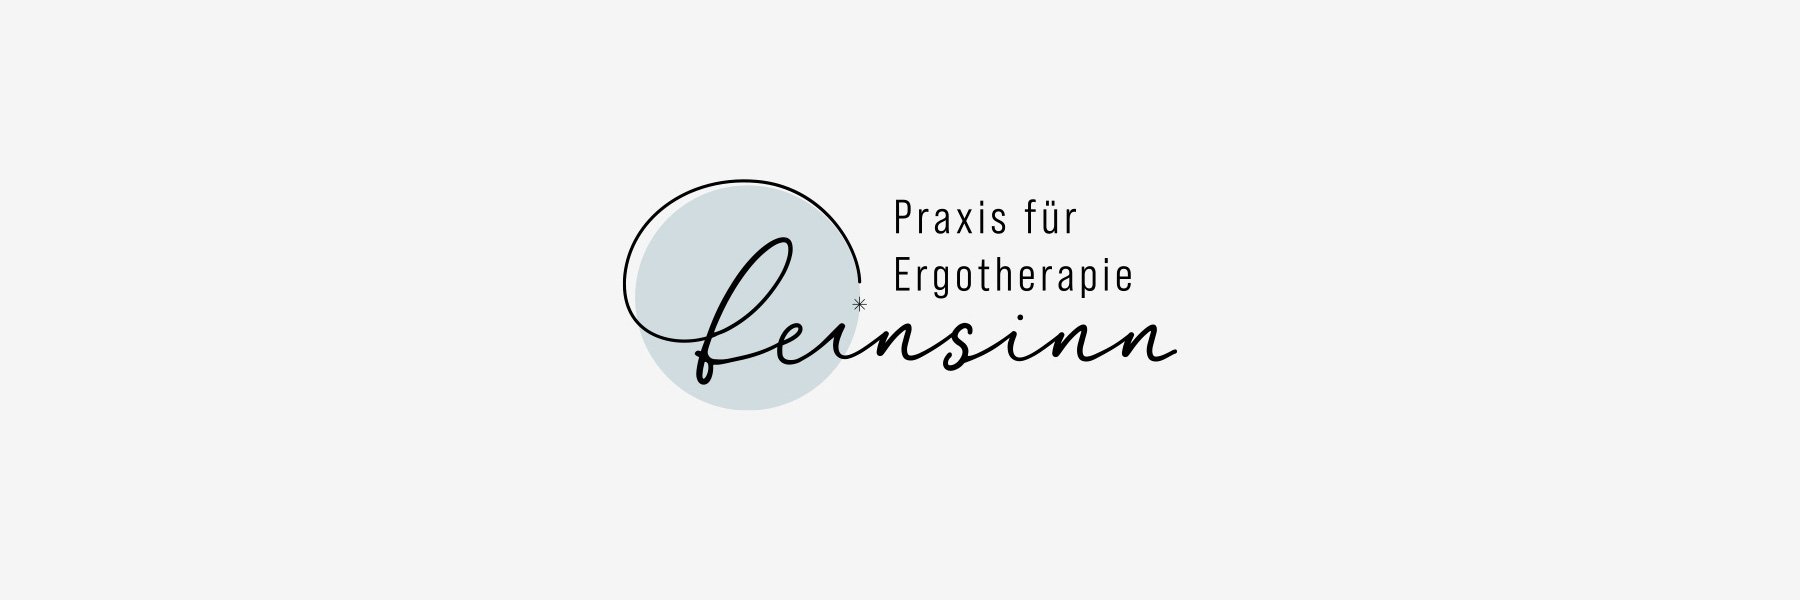 Logo für Ergotherapie-Praxis